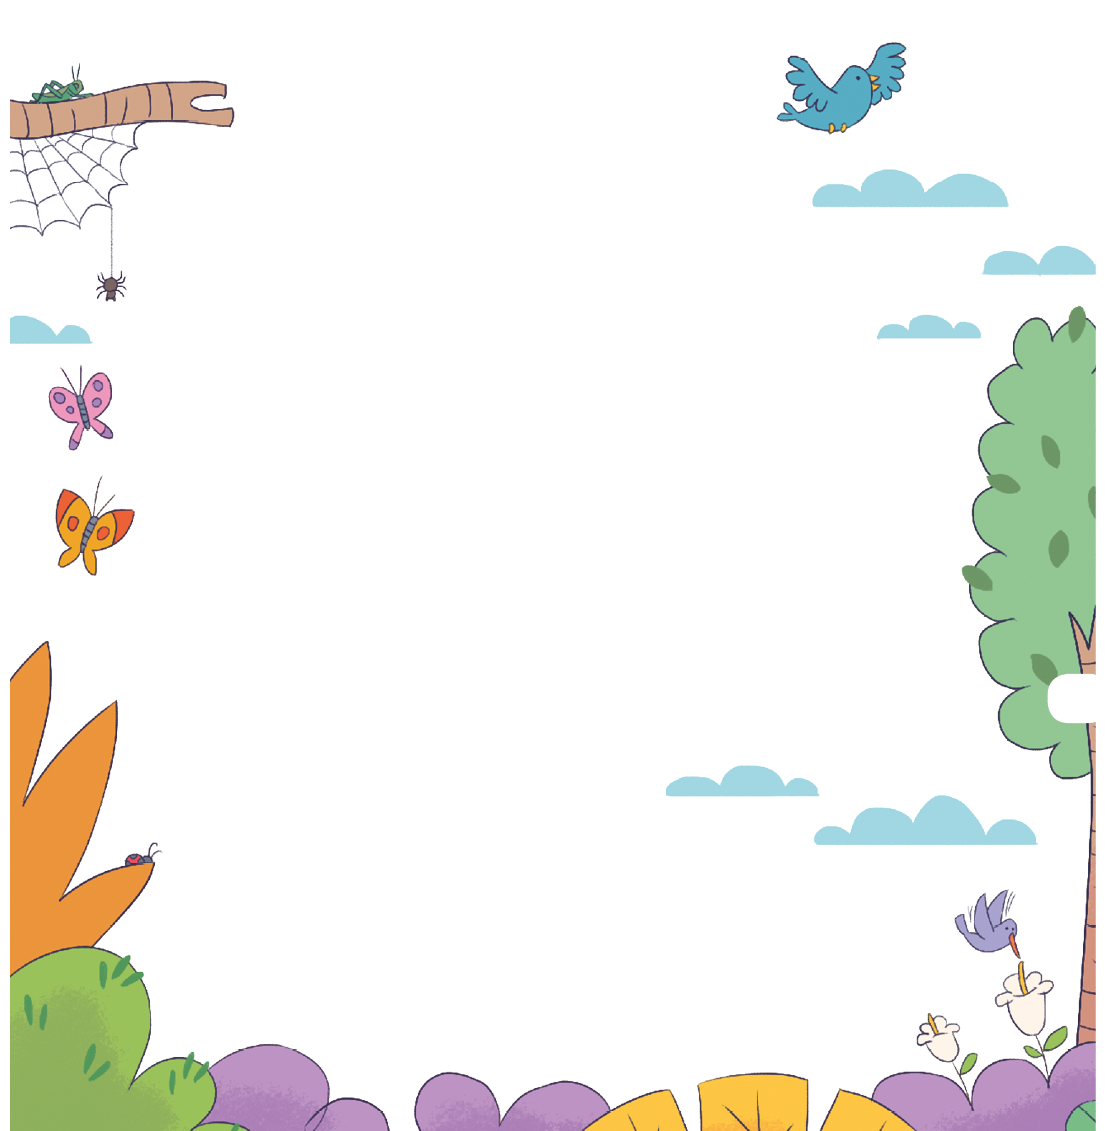 Imagem: Ilustração. Contorno da página com árvores, folhas e arbustos coloridos. Ao redor há borboletas, nuvens, pássaro azul, aranha em uma teia e um grilo. Fim da imagem.